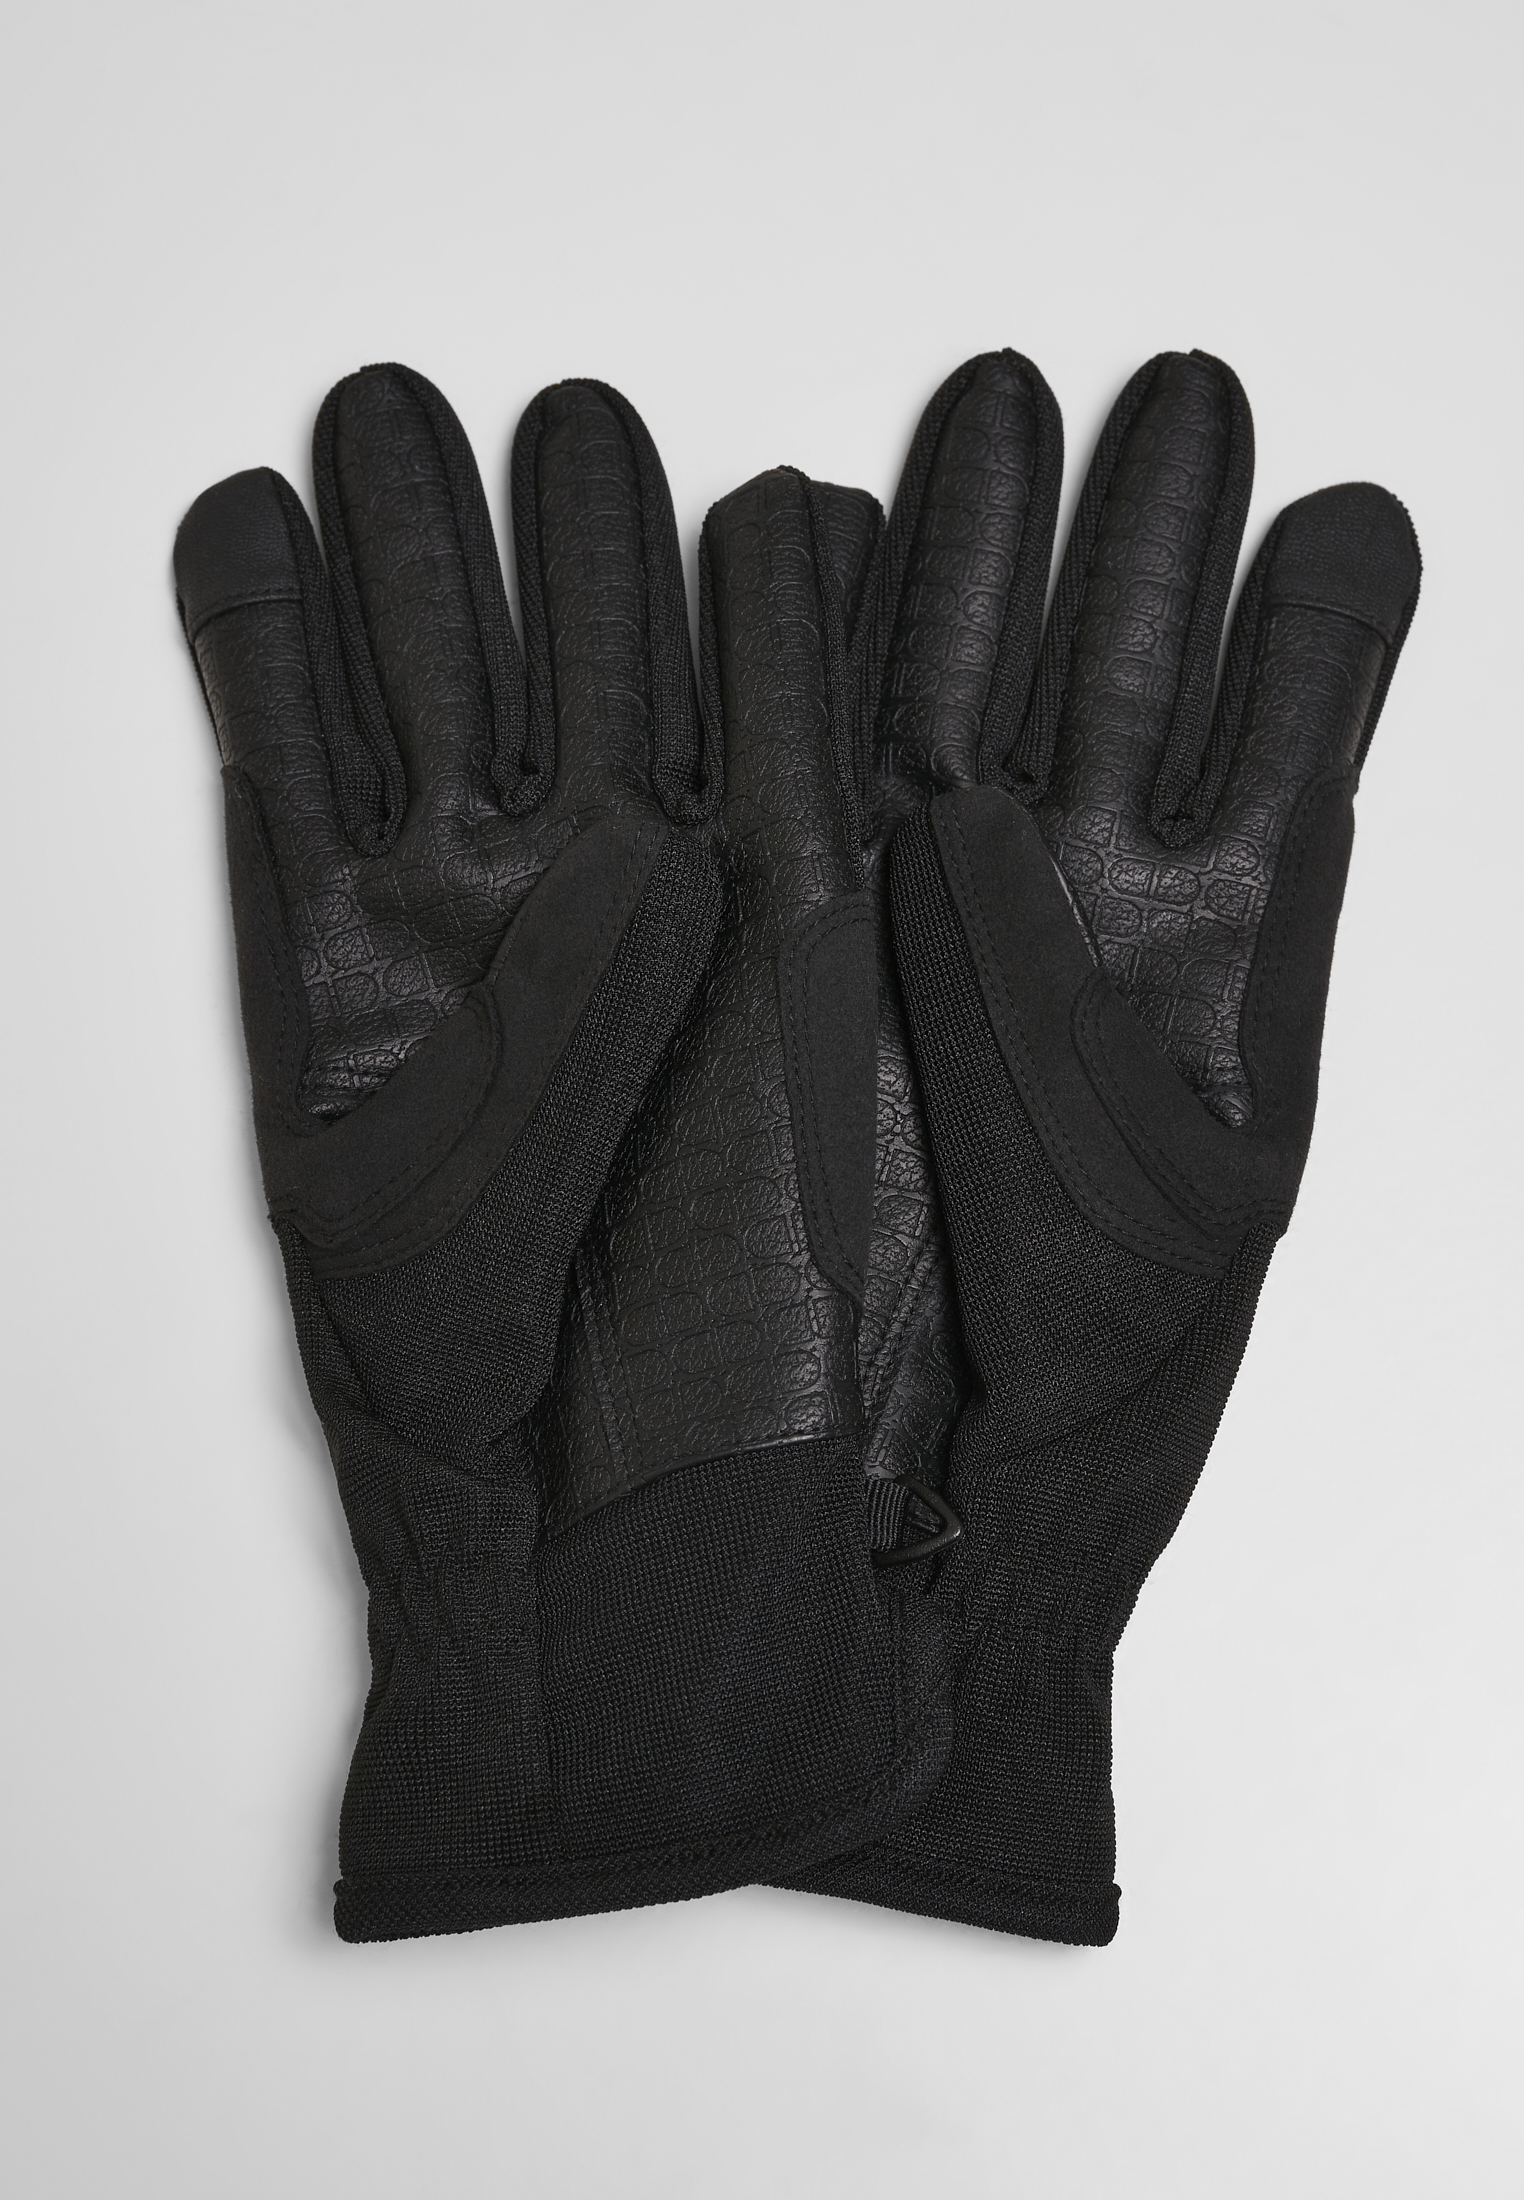 Handschuhe & Schals Performance Winter Gloves in Farbe black